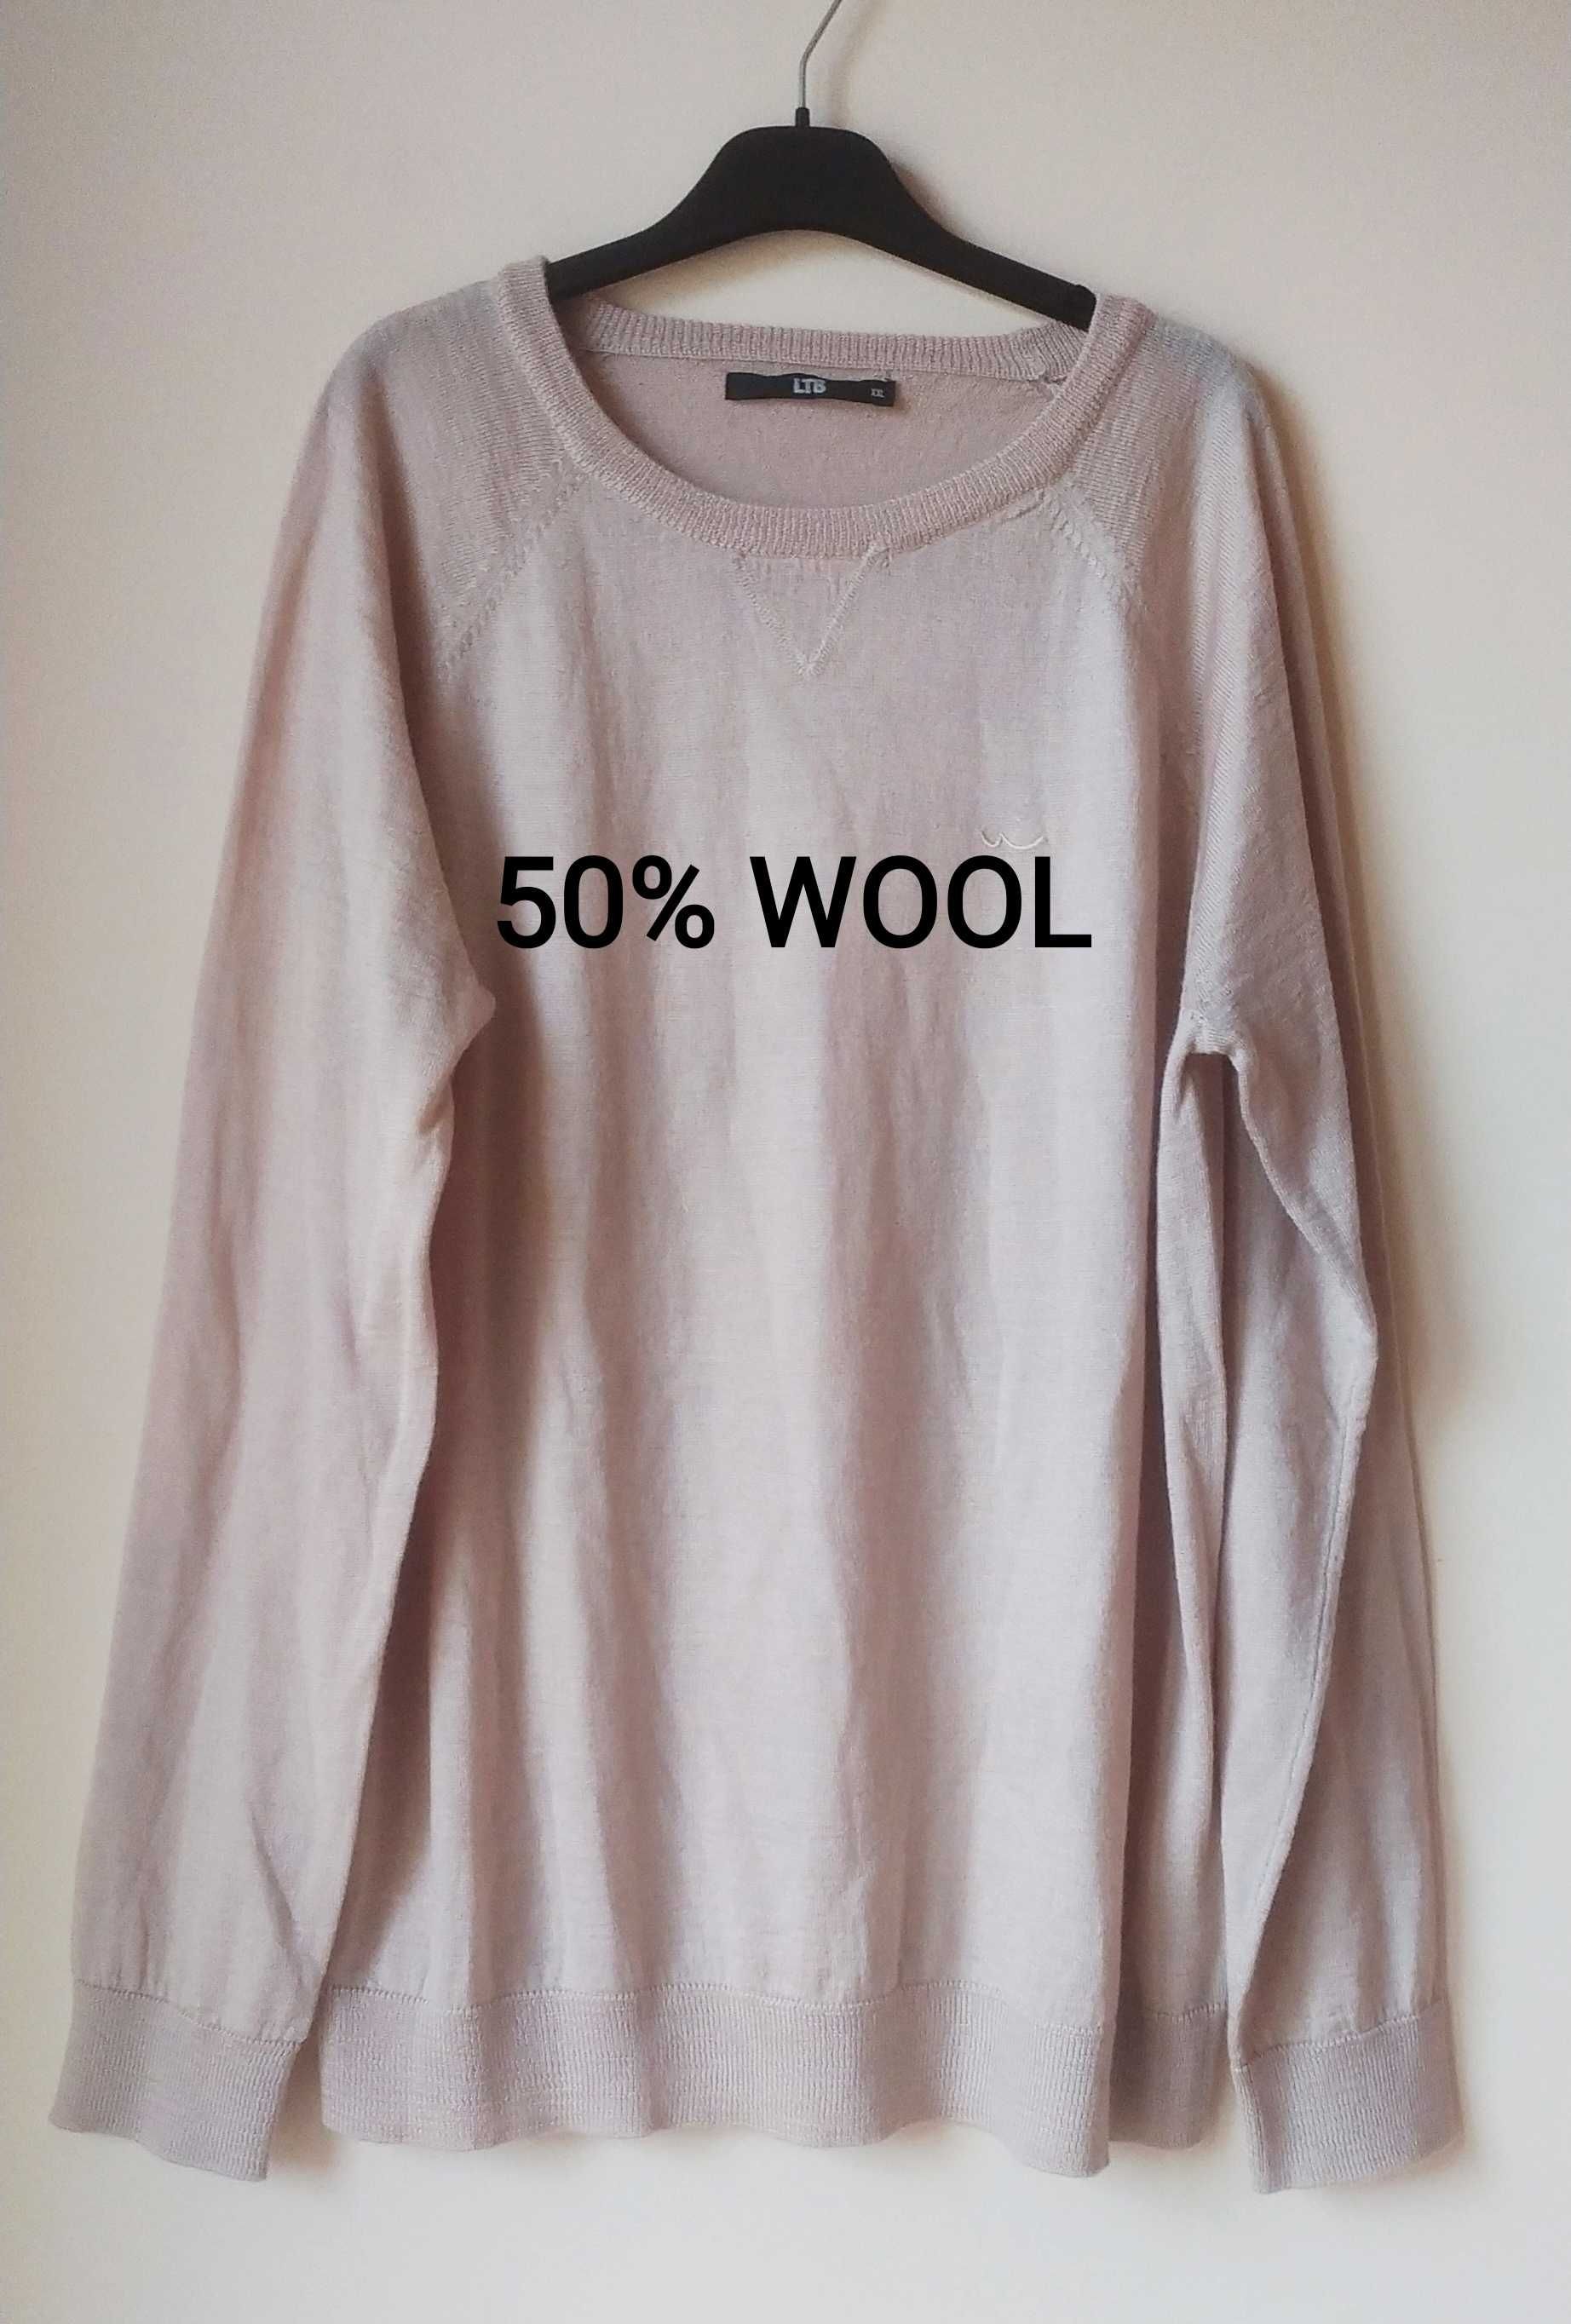 Beżowy wełniany sweter oversize,50 % Wełna, rozmiar XXL